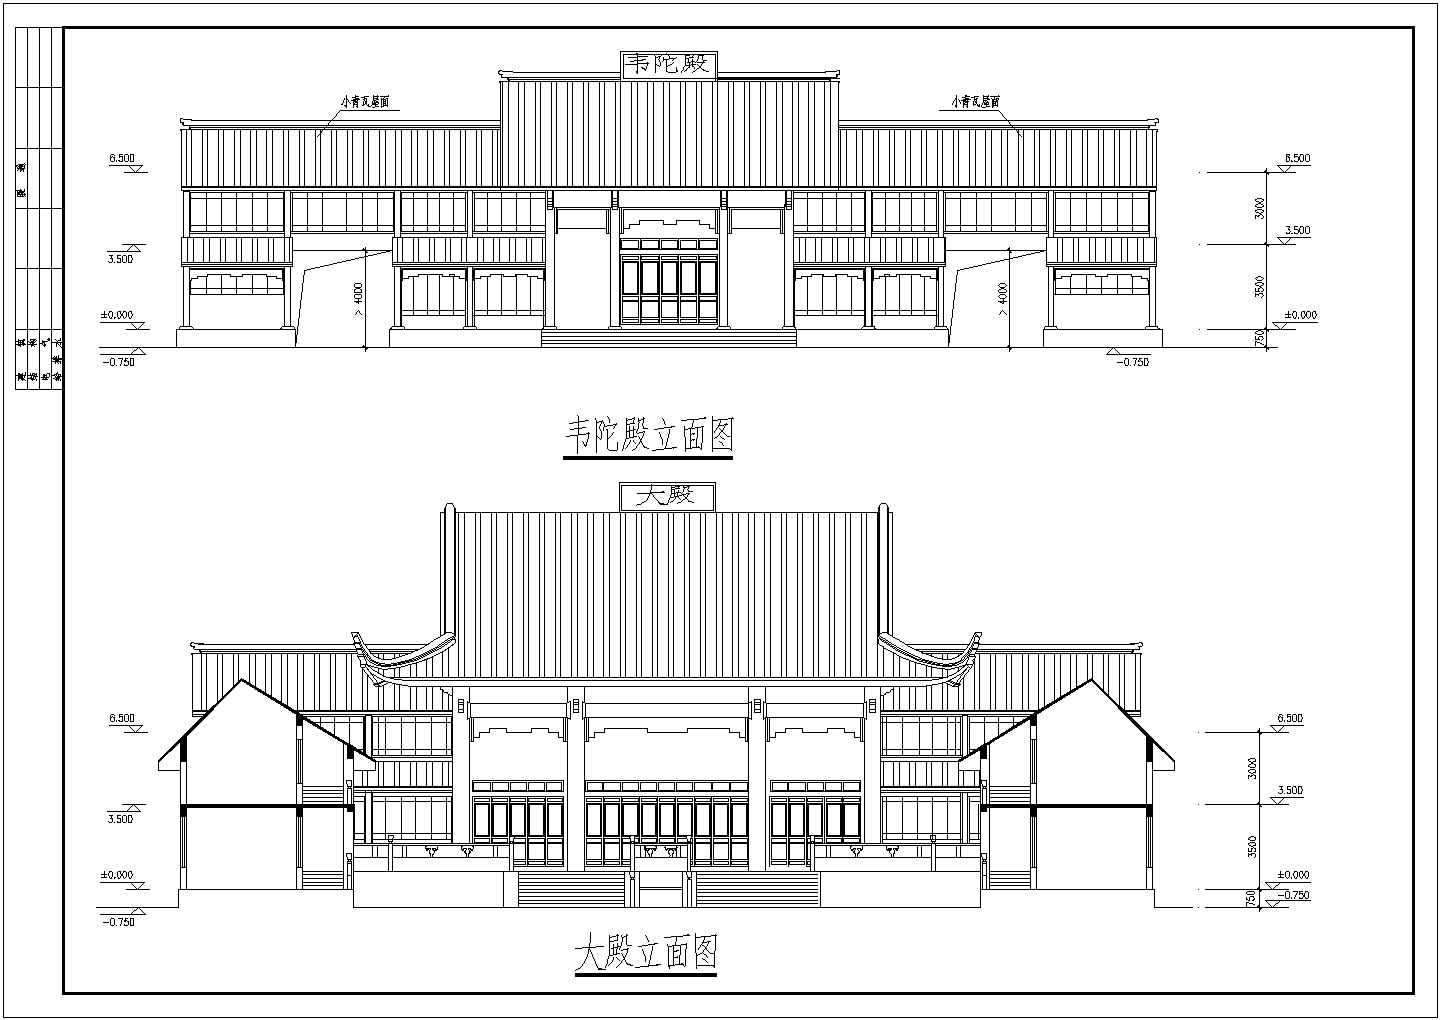 【贵州】某景区古建筑设计施工图纸